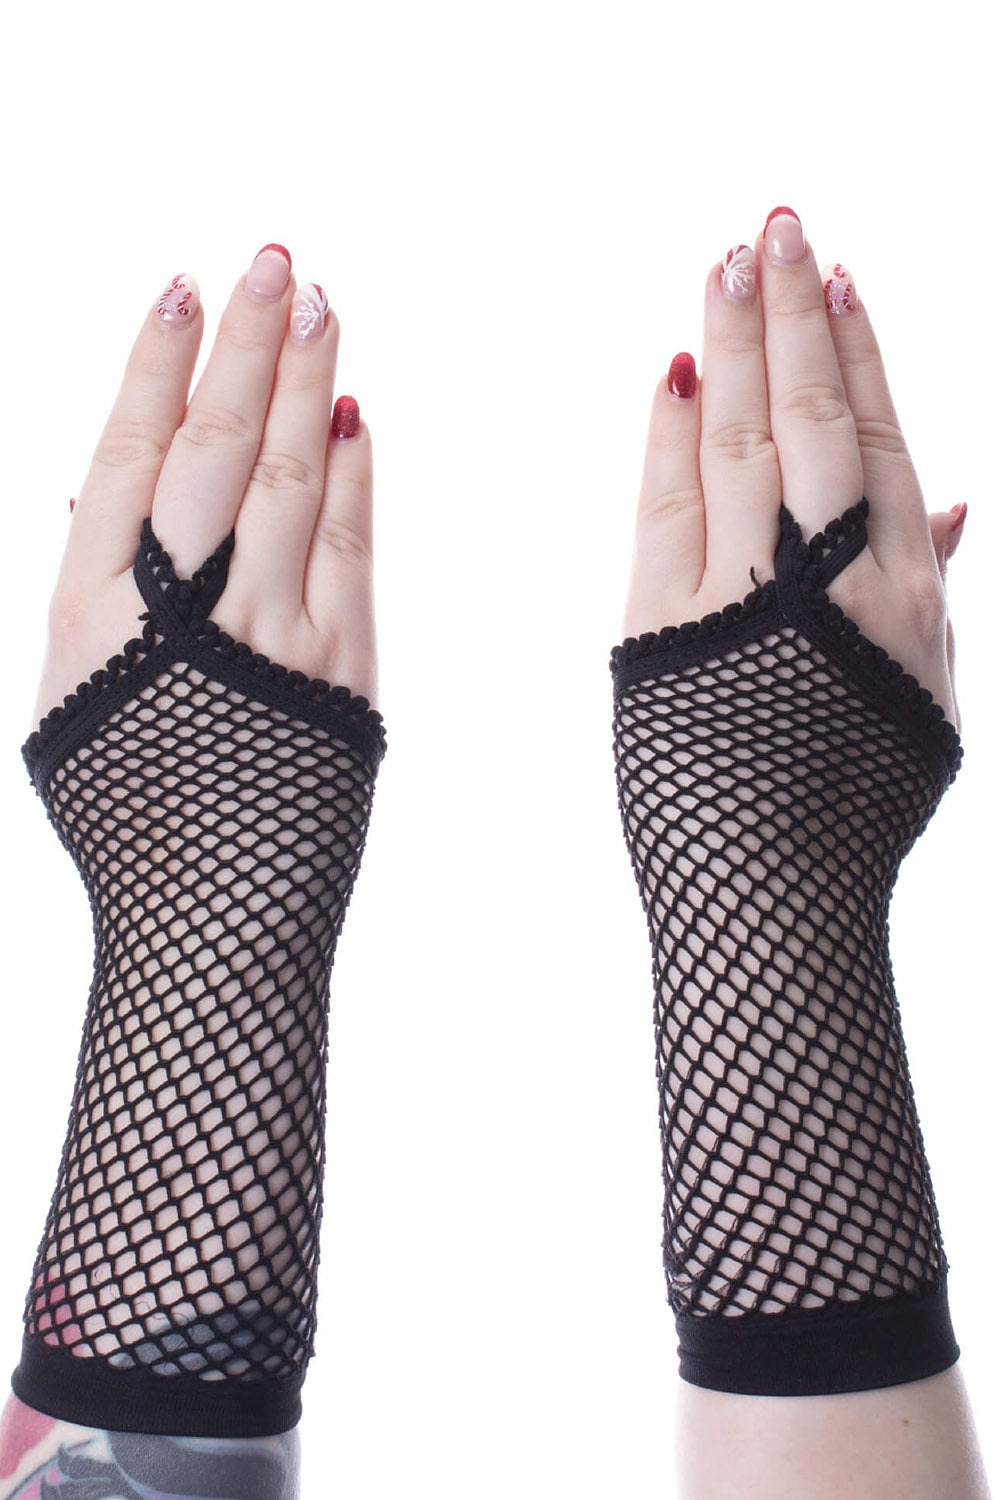 black fishnet gloves with finger loops